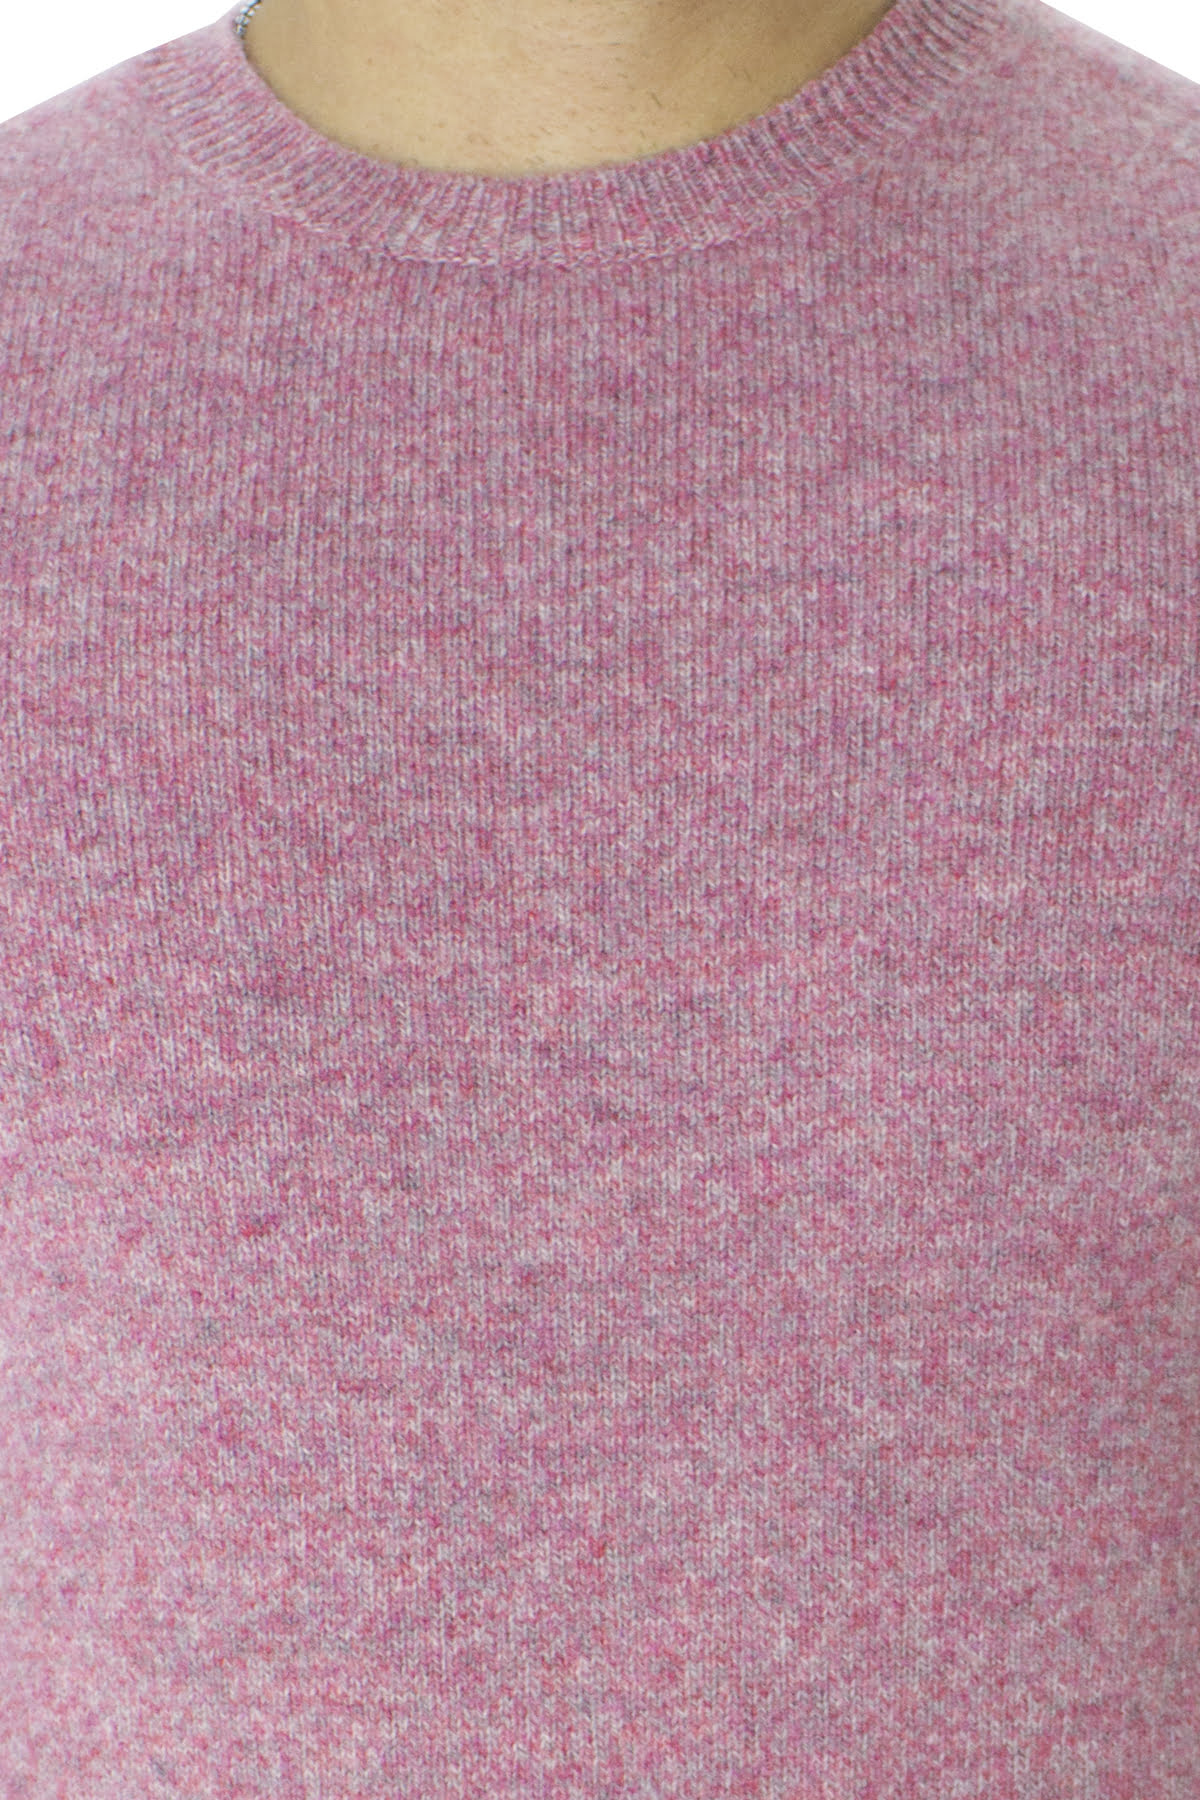 Maglione uomo Girocollo rosa effetto melange fuxia in lana 100% slim fit